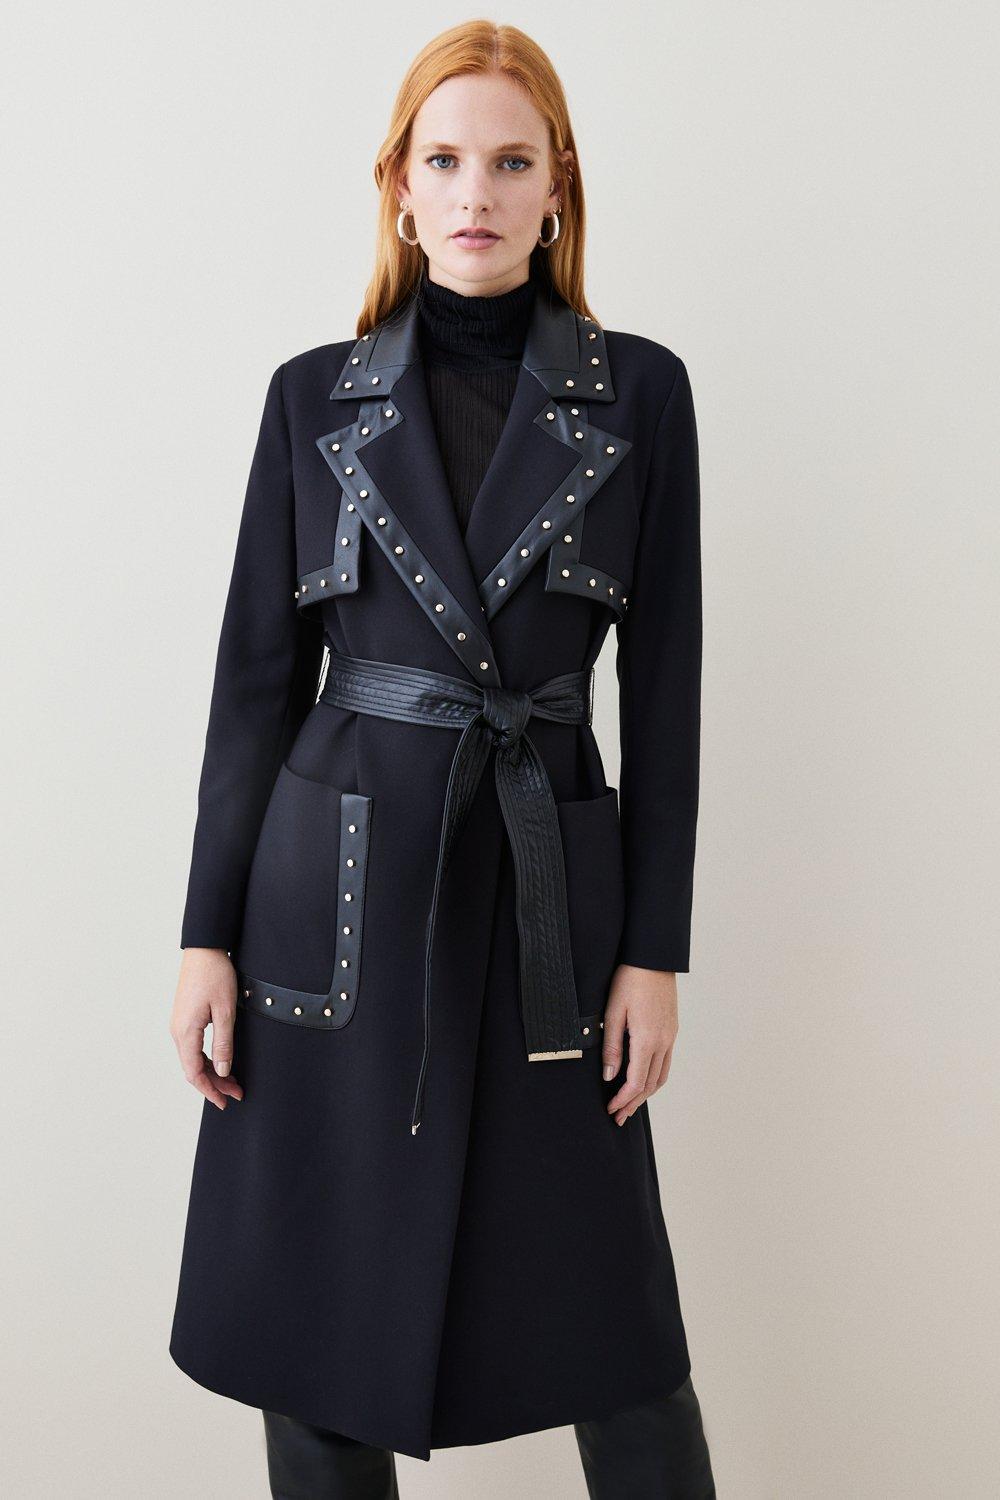 Louis Vuitton Velvet Collar Blazer Grey Polyester